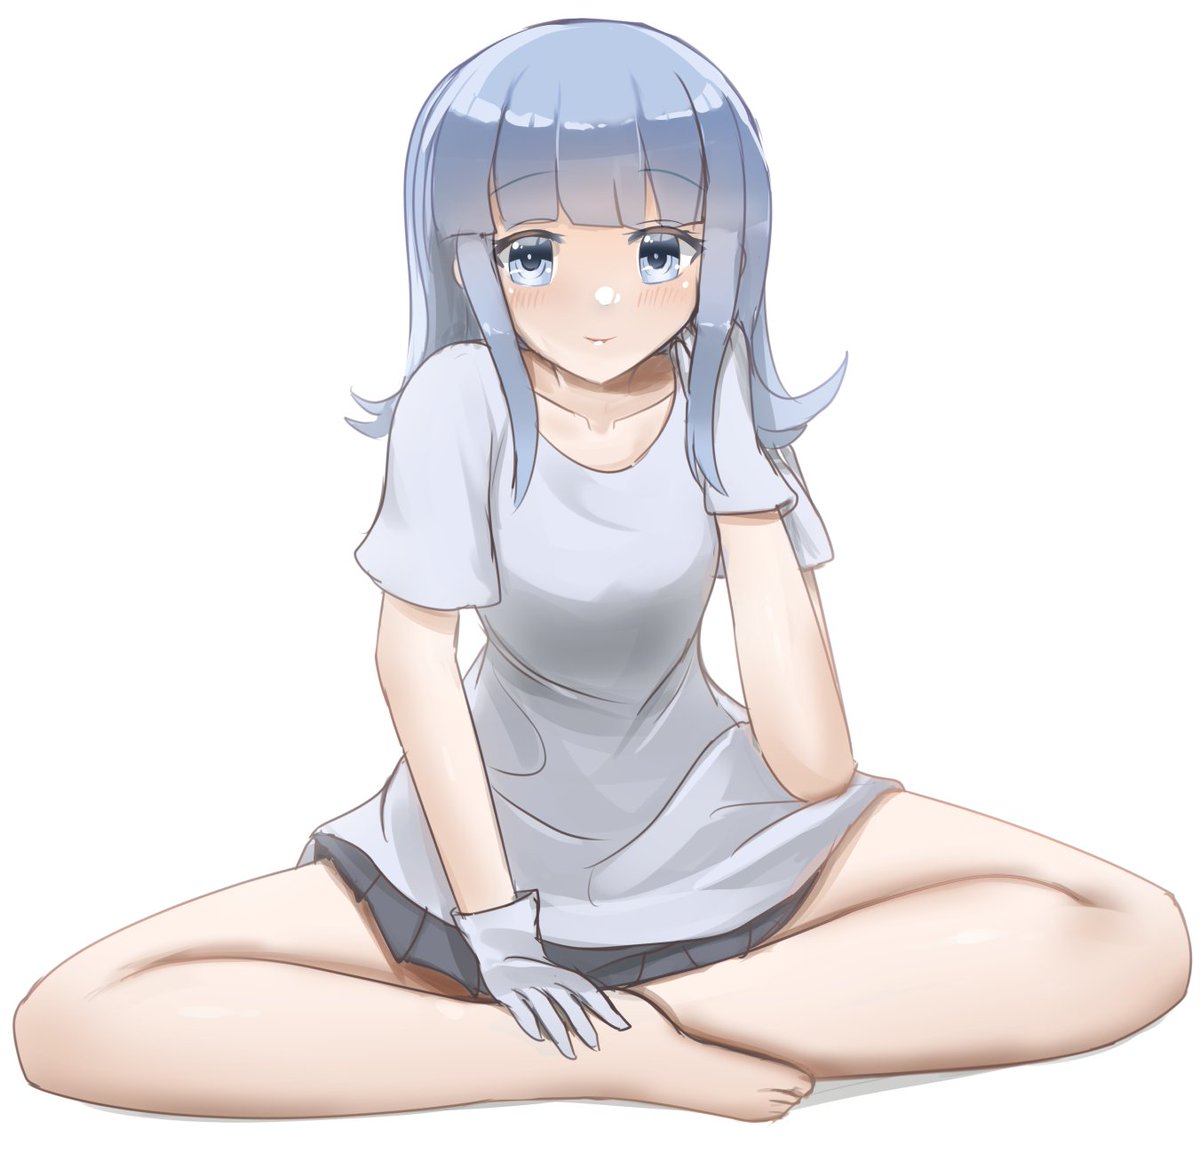 hatsukaze (kancolle) 1girl solo shirt blue hair skirt gloves white background  illustration images